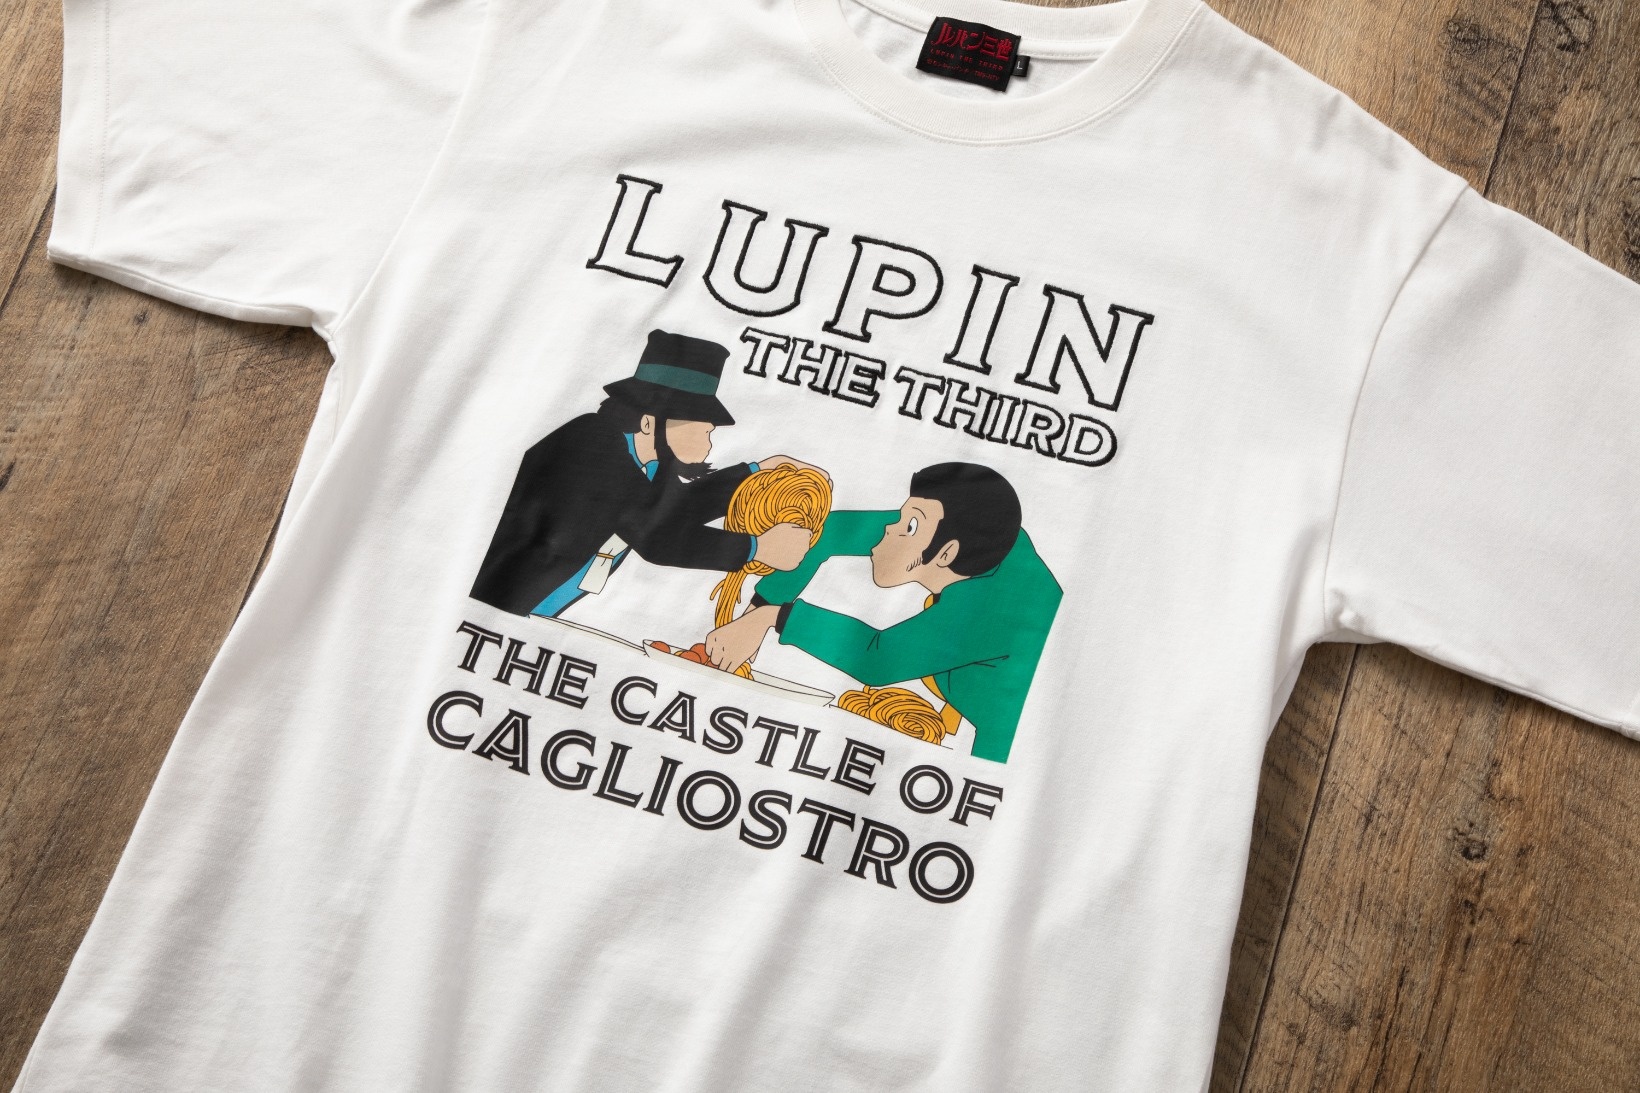 ルパン三世 カリオストロの城 tシャツ 映画 90s ヴィンテージ  ユーロ